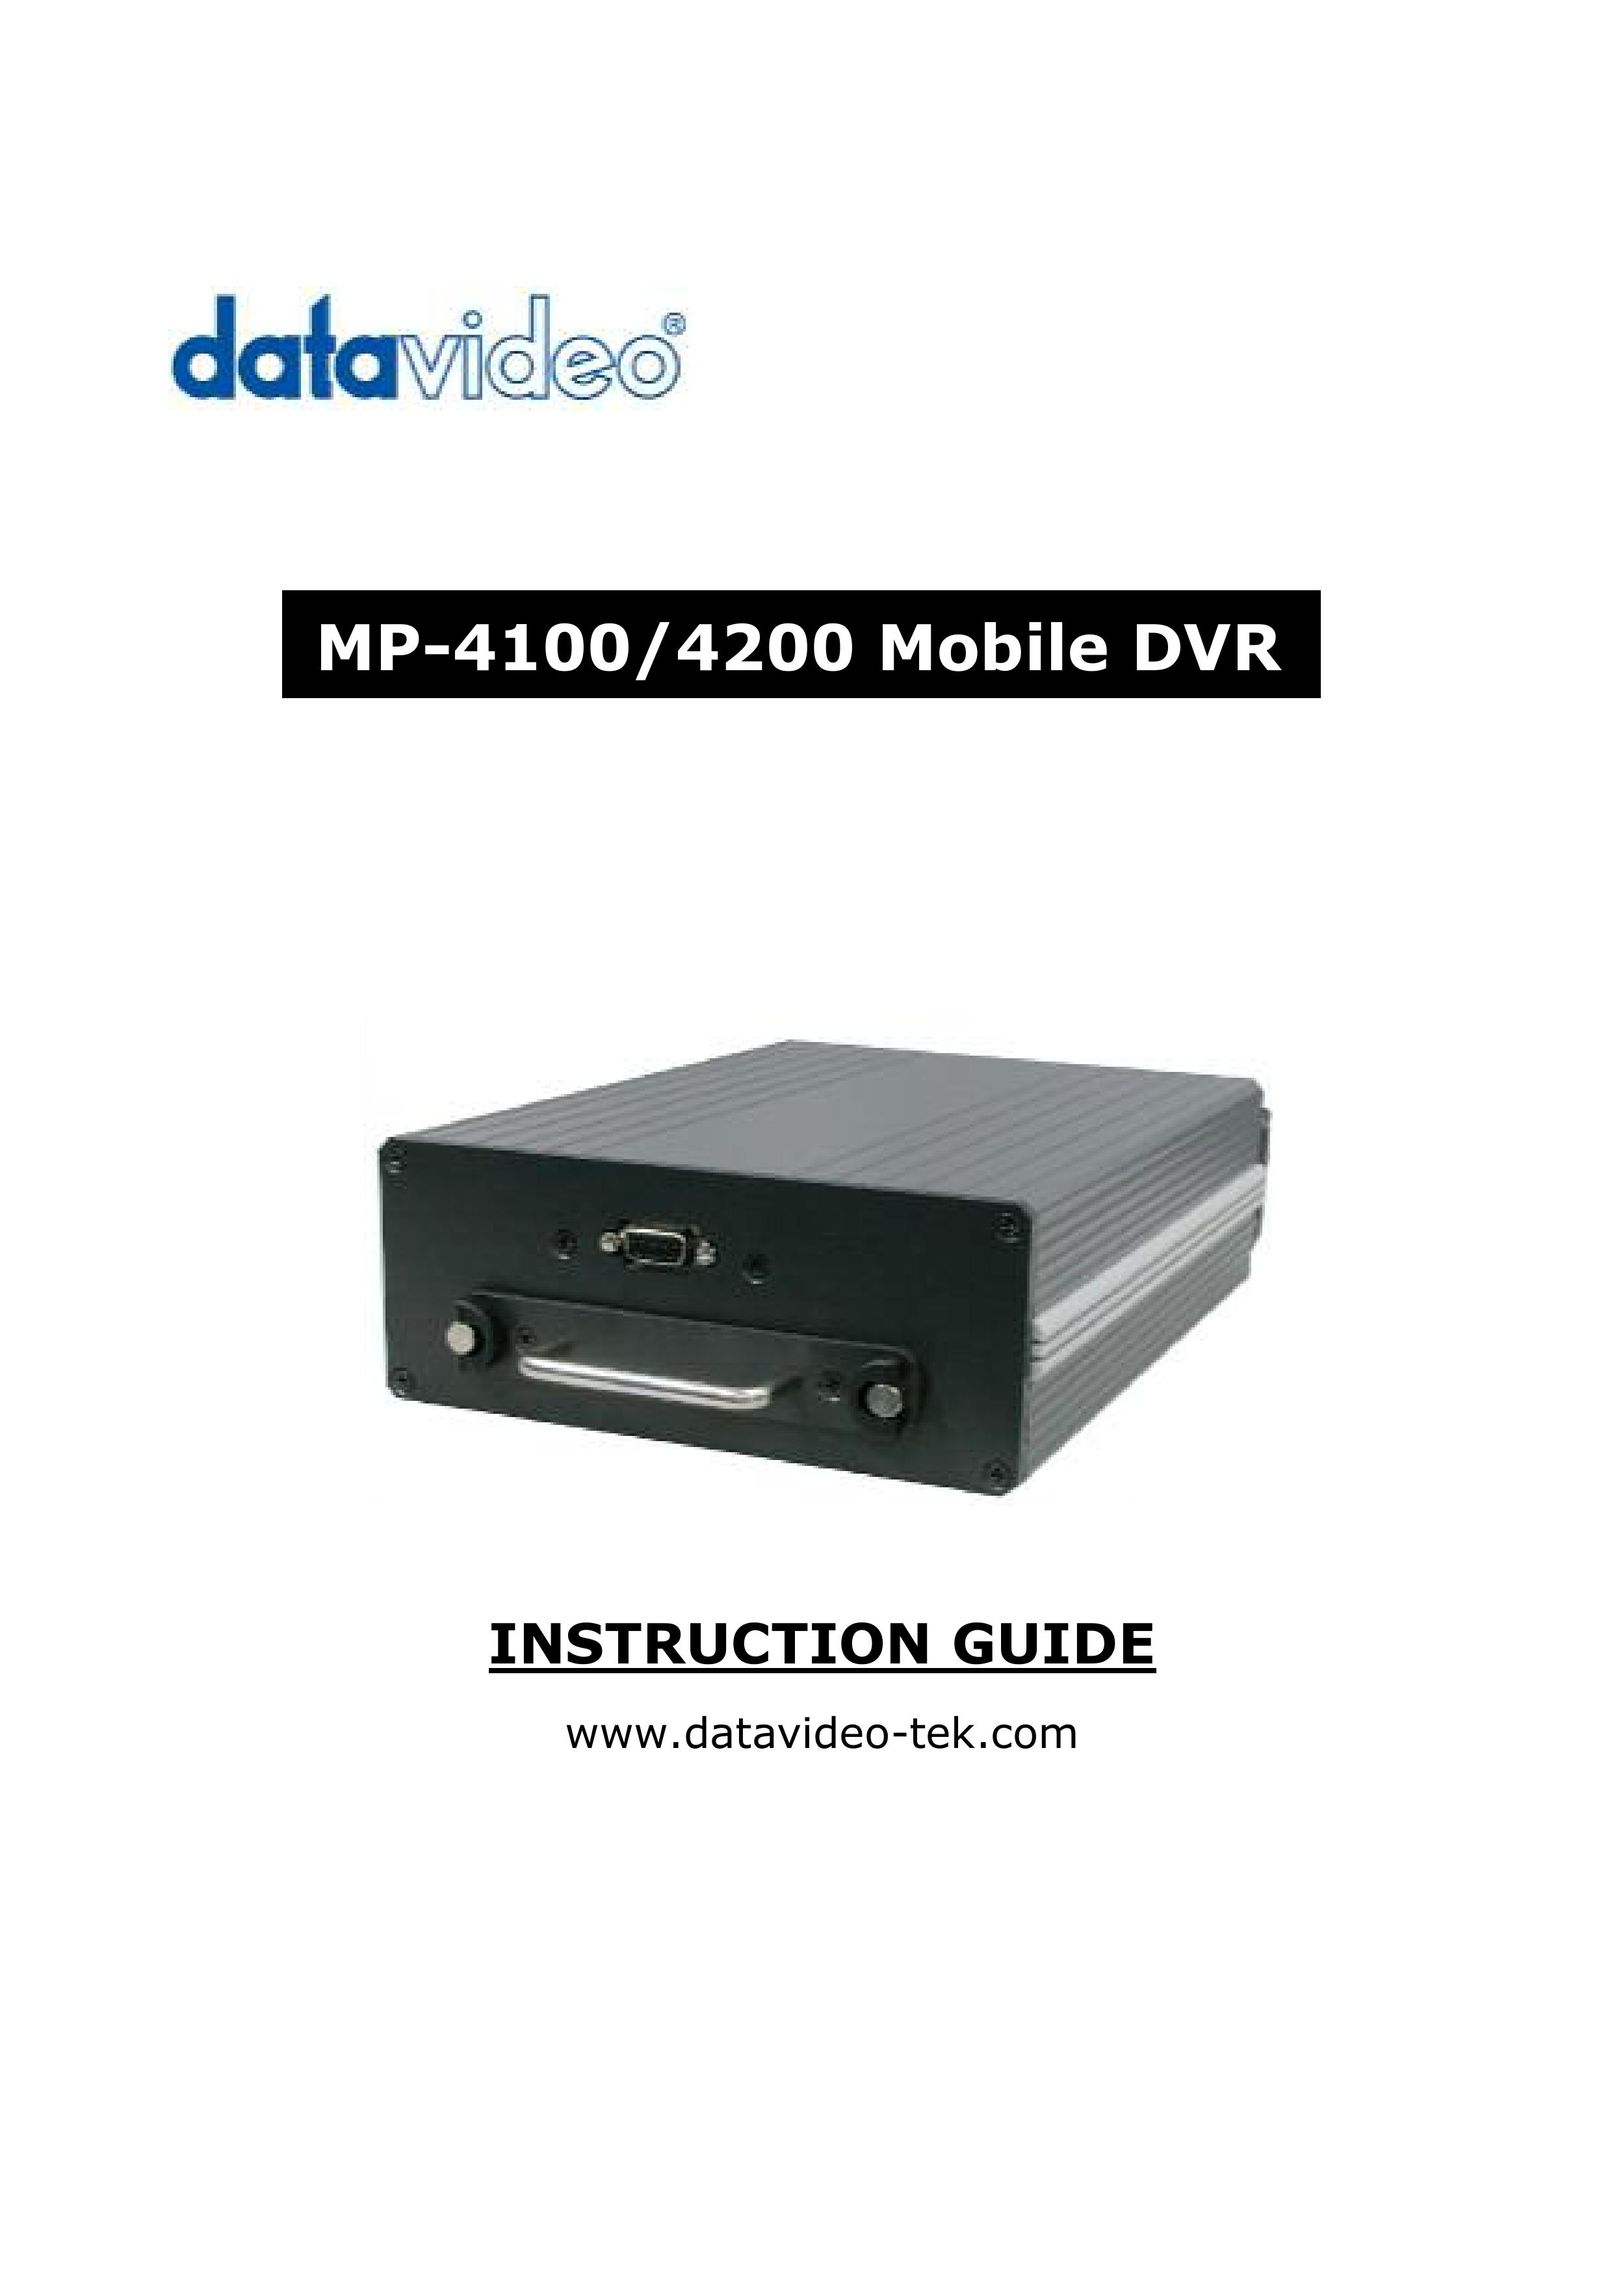 Datavideo MP-4100 DVR User Manual